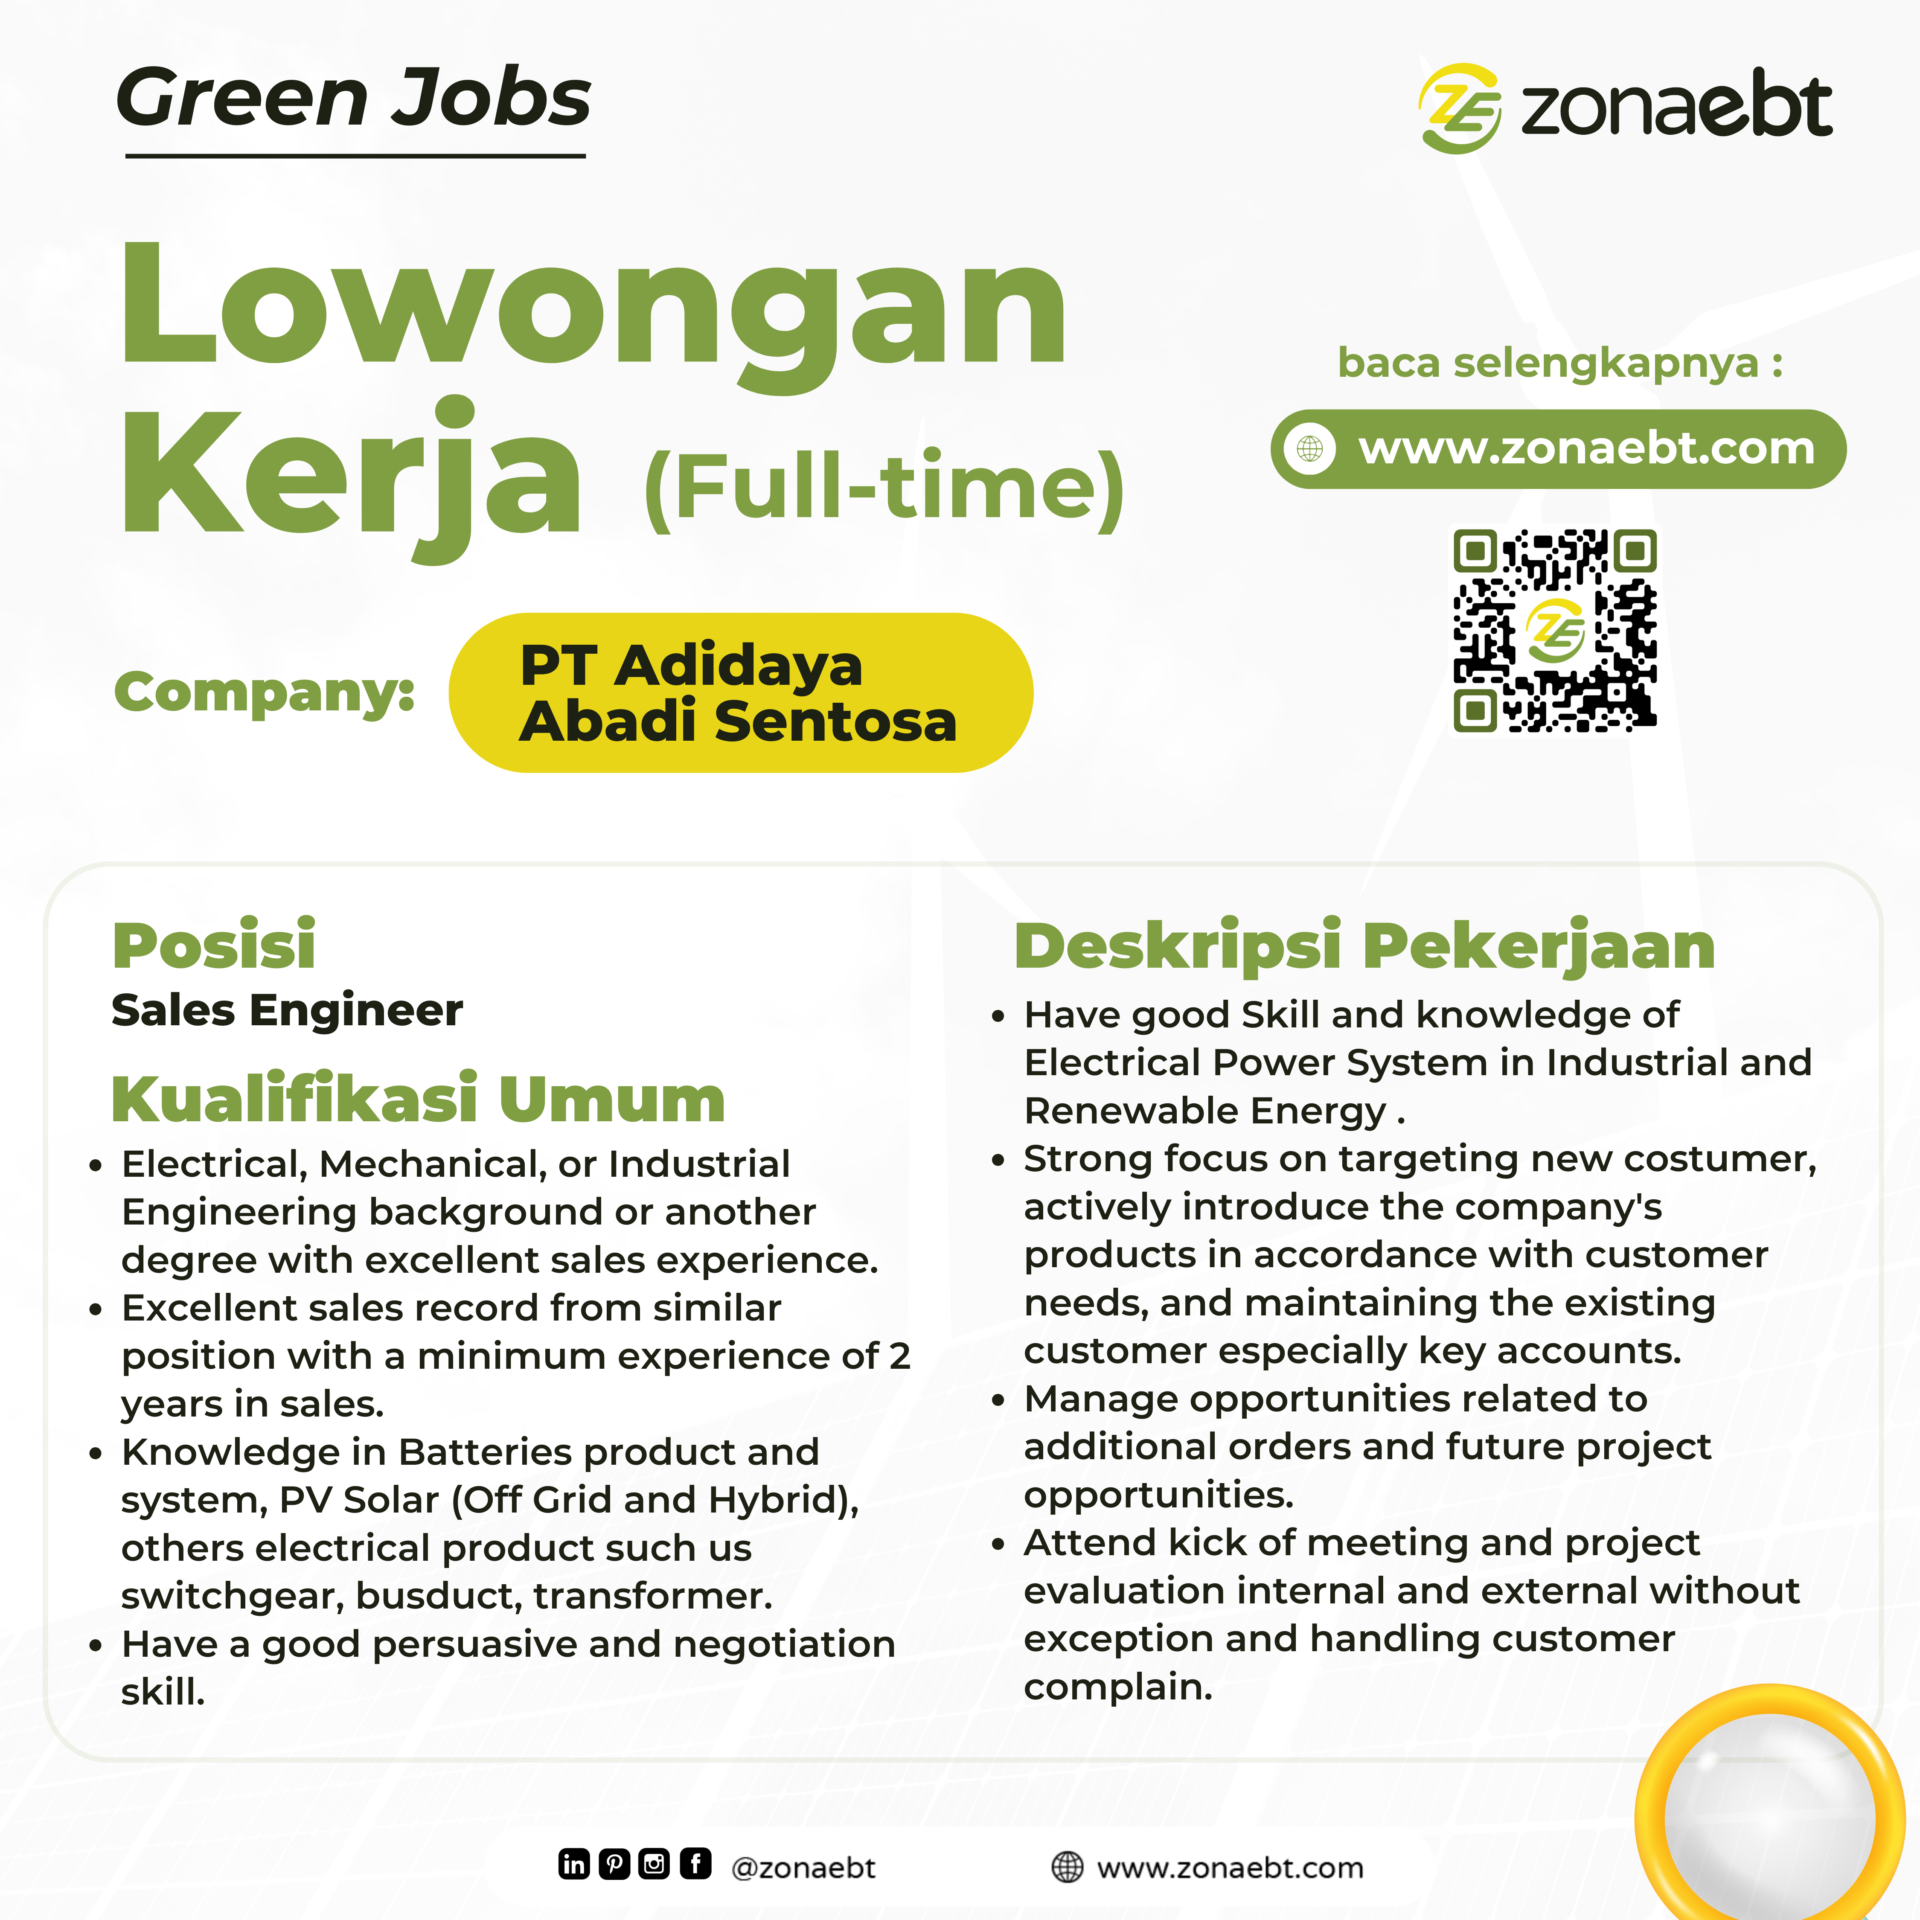 Post Sales Engineer Green jobs zonaebt.com